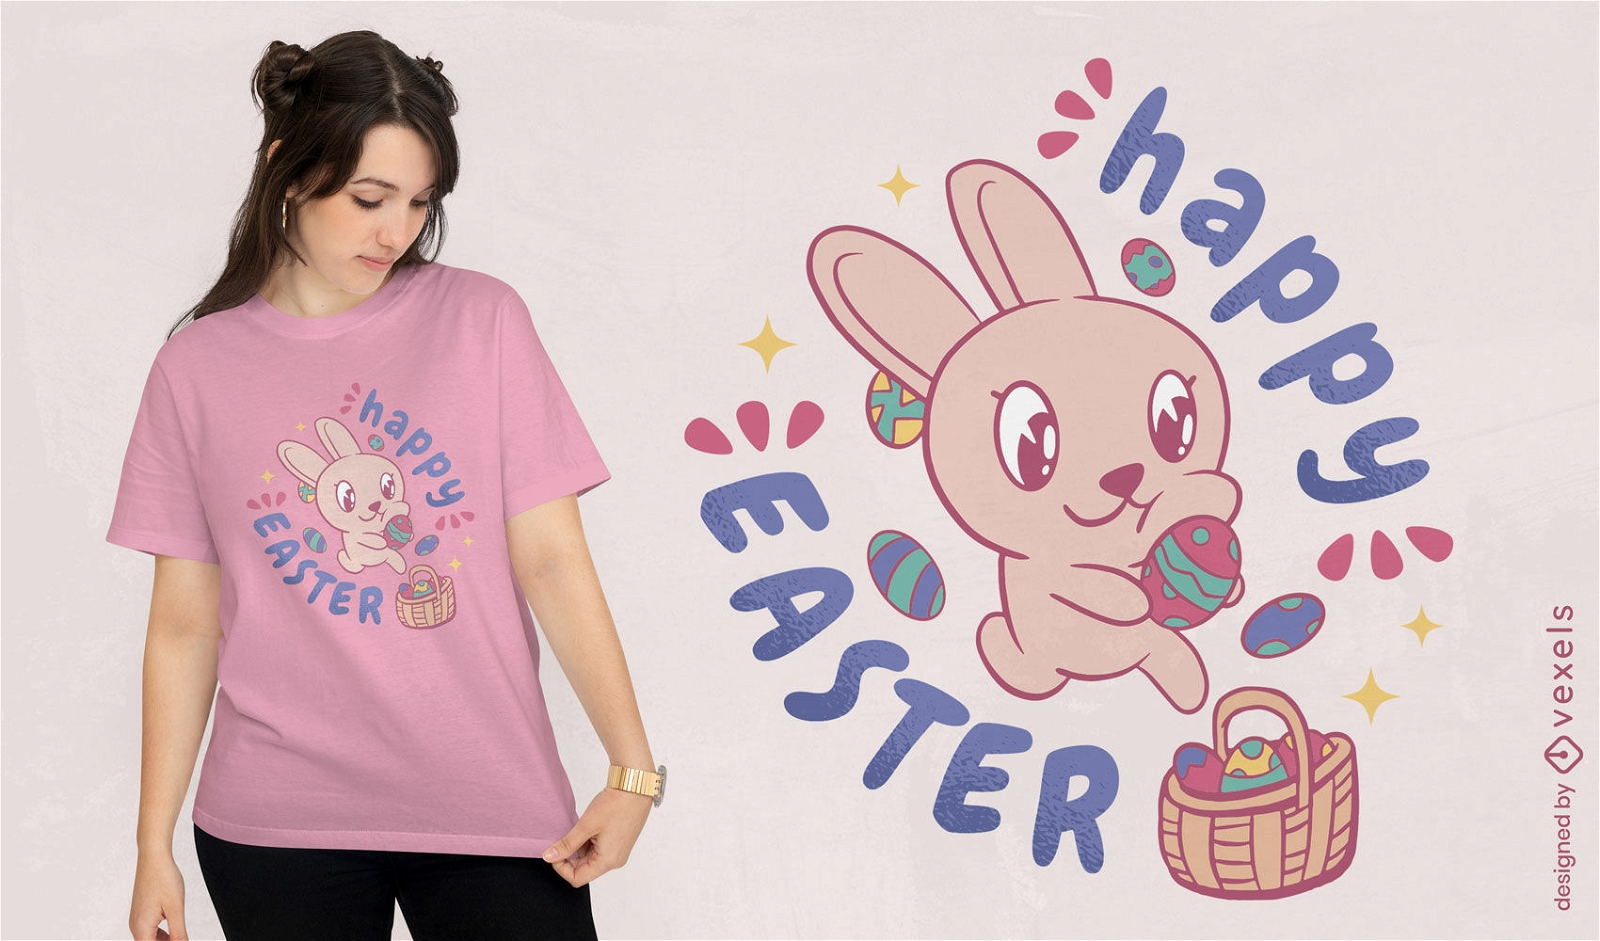 Dise?o de camiseta de conejito lindo feliz Pascua